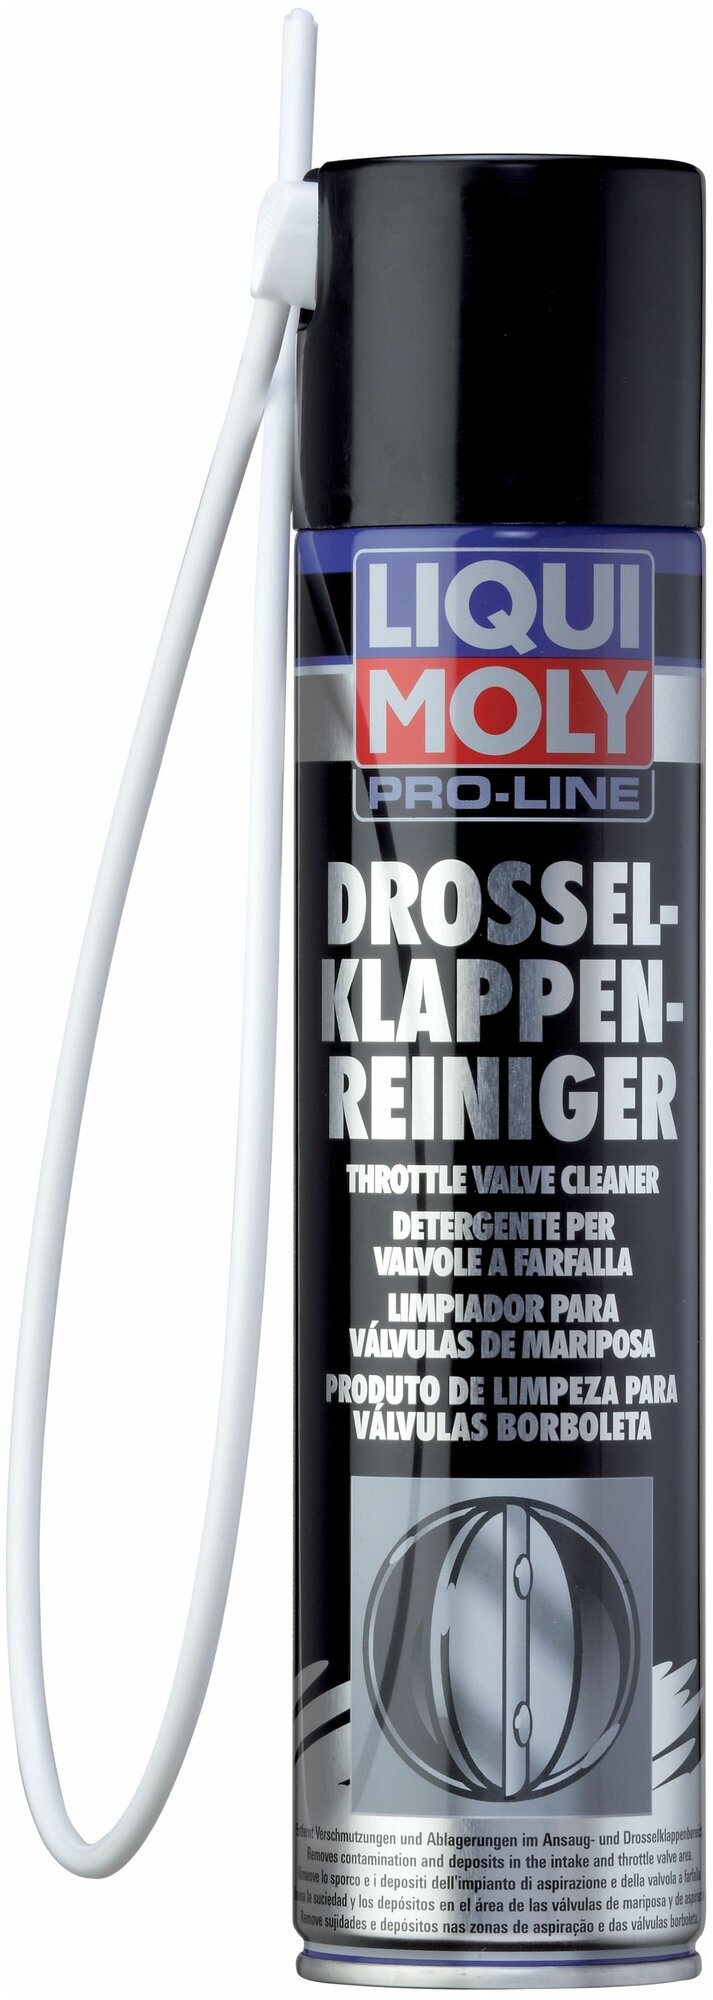 Очиститель дроссельных заслонок LIQUI MOLY Pro-Line 400 мл.